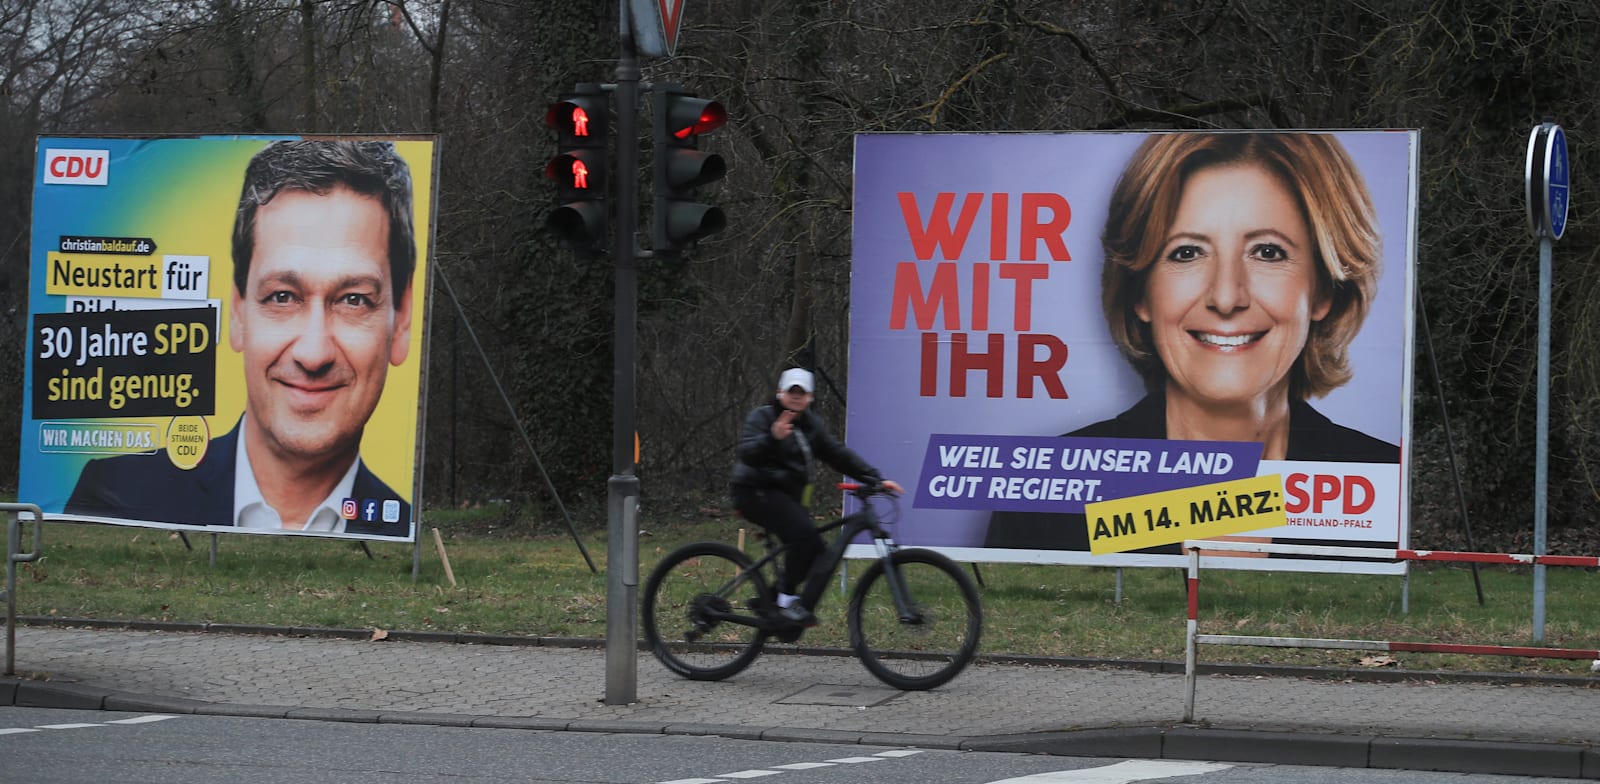 שלטי בחירות של מנהיגת ה-SPD מאלו דרייר והמועמד מטעם ה-CDU כריסטיאן בלדאוף בנויוויד בגרמניה / צילום: Reuters, Wolfgang Rattay